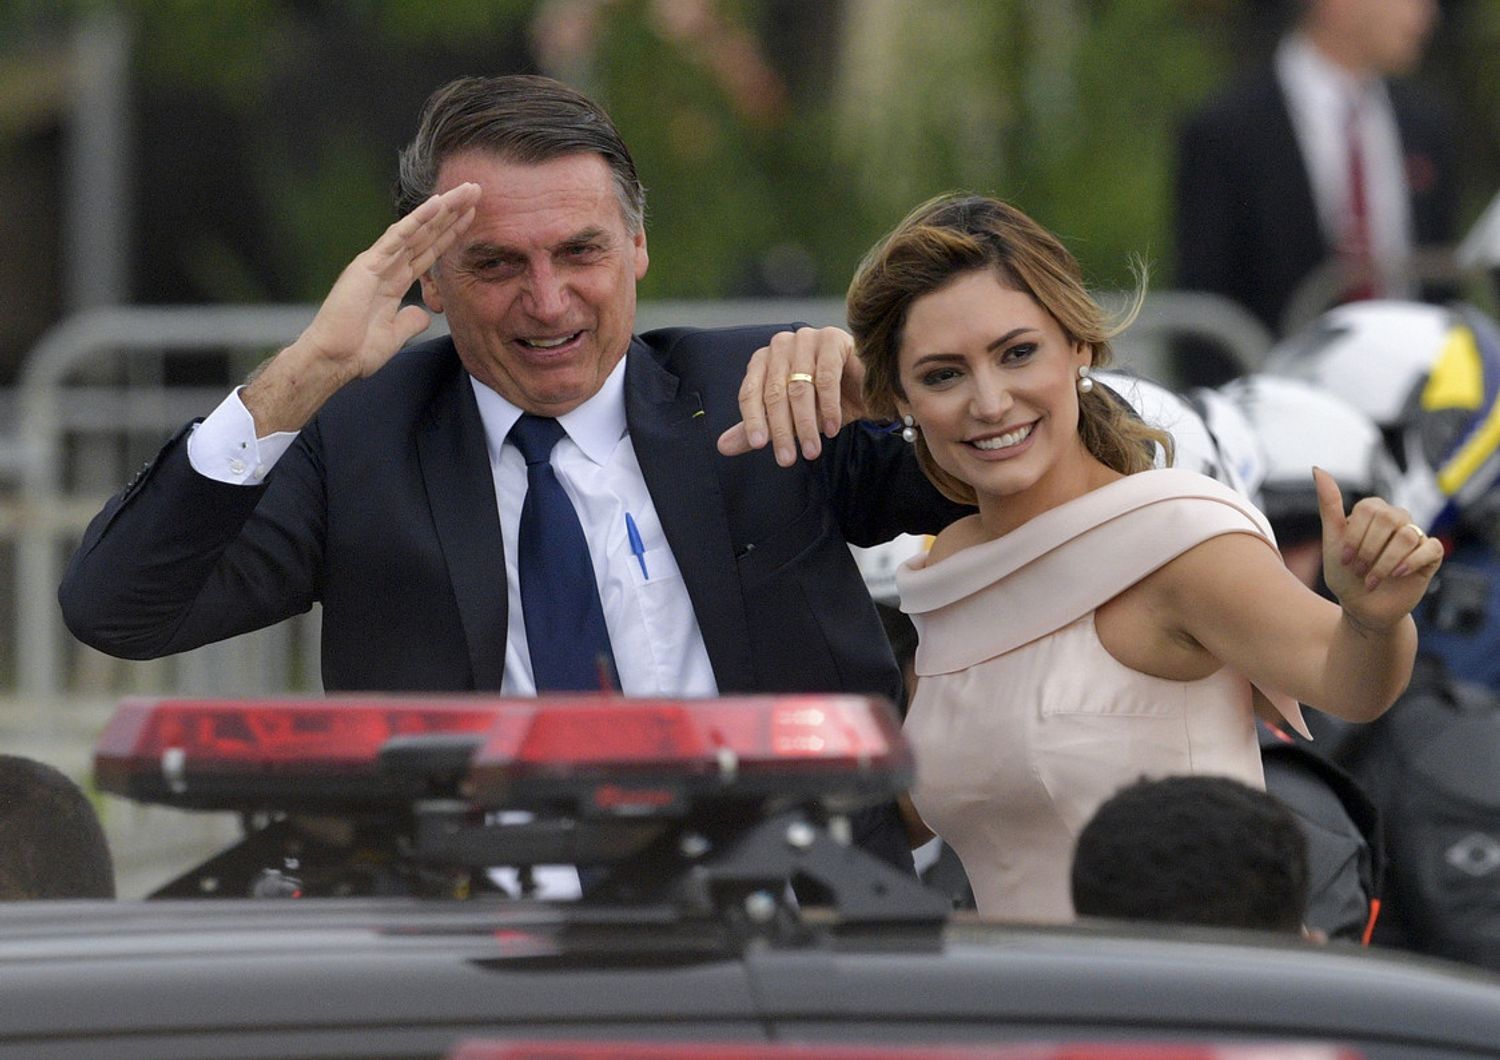 Jair Bolsonaro e la moglie Michelle